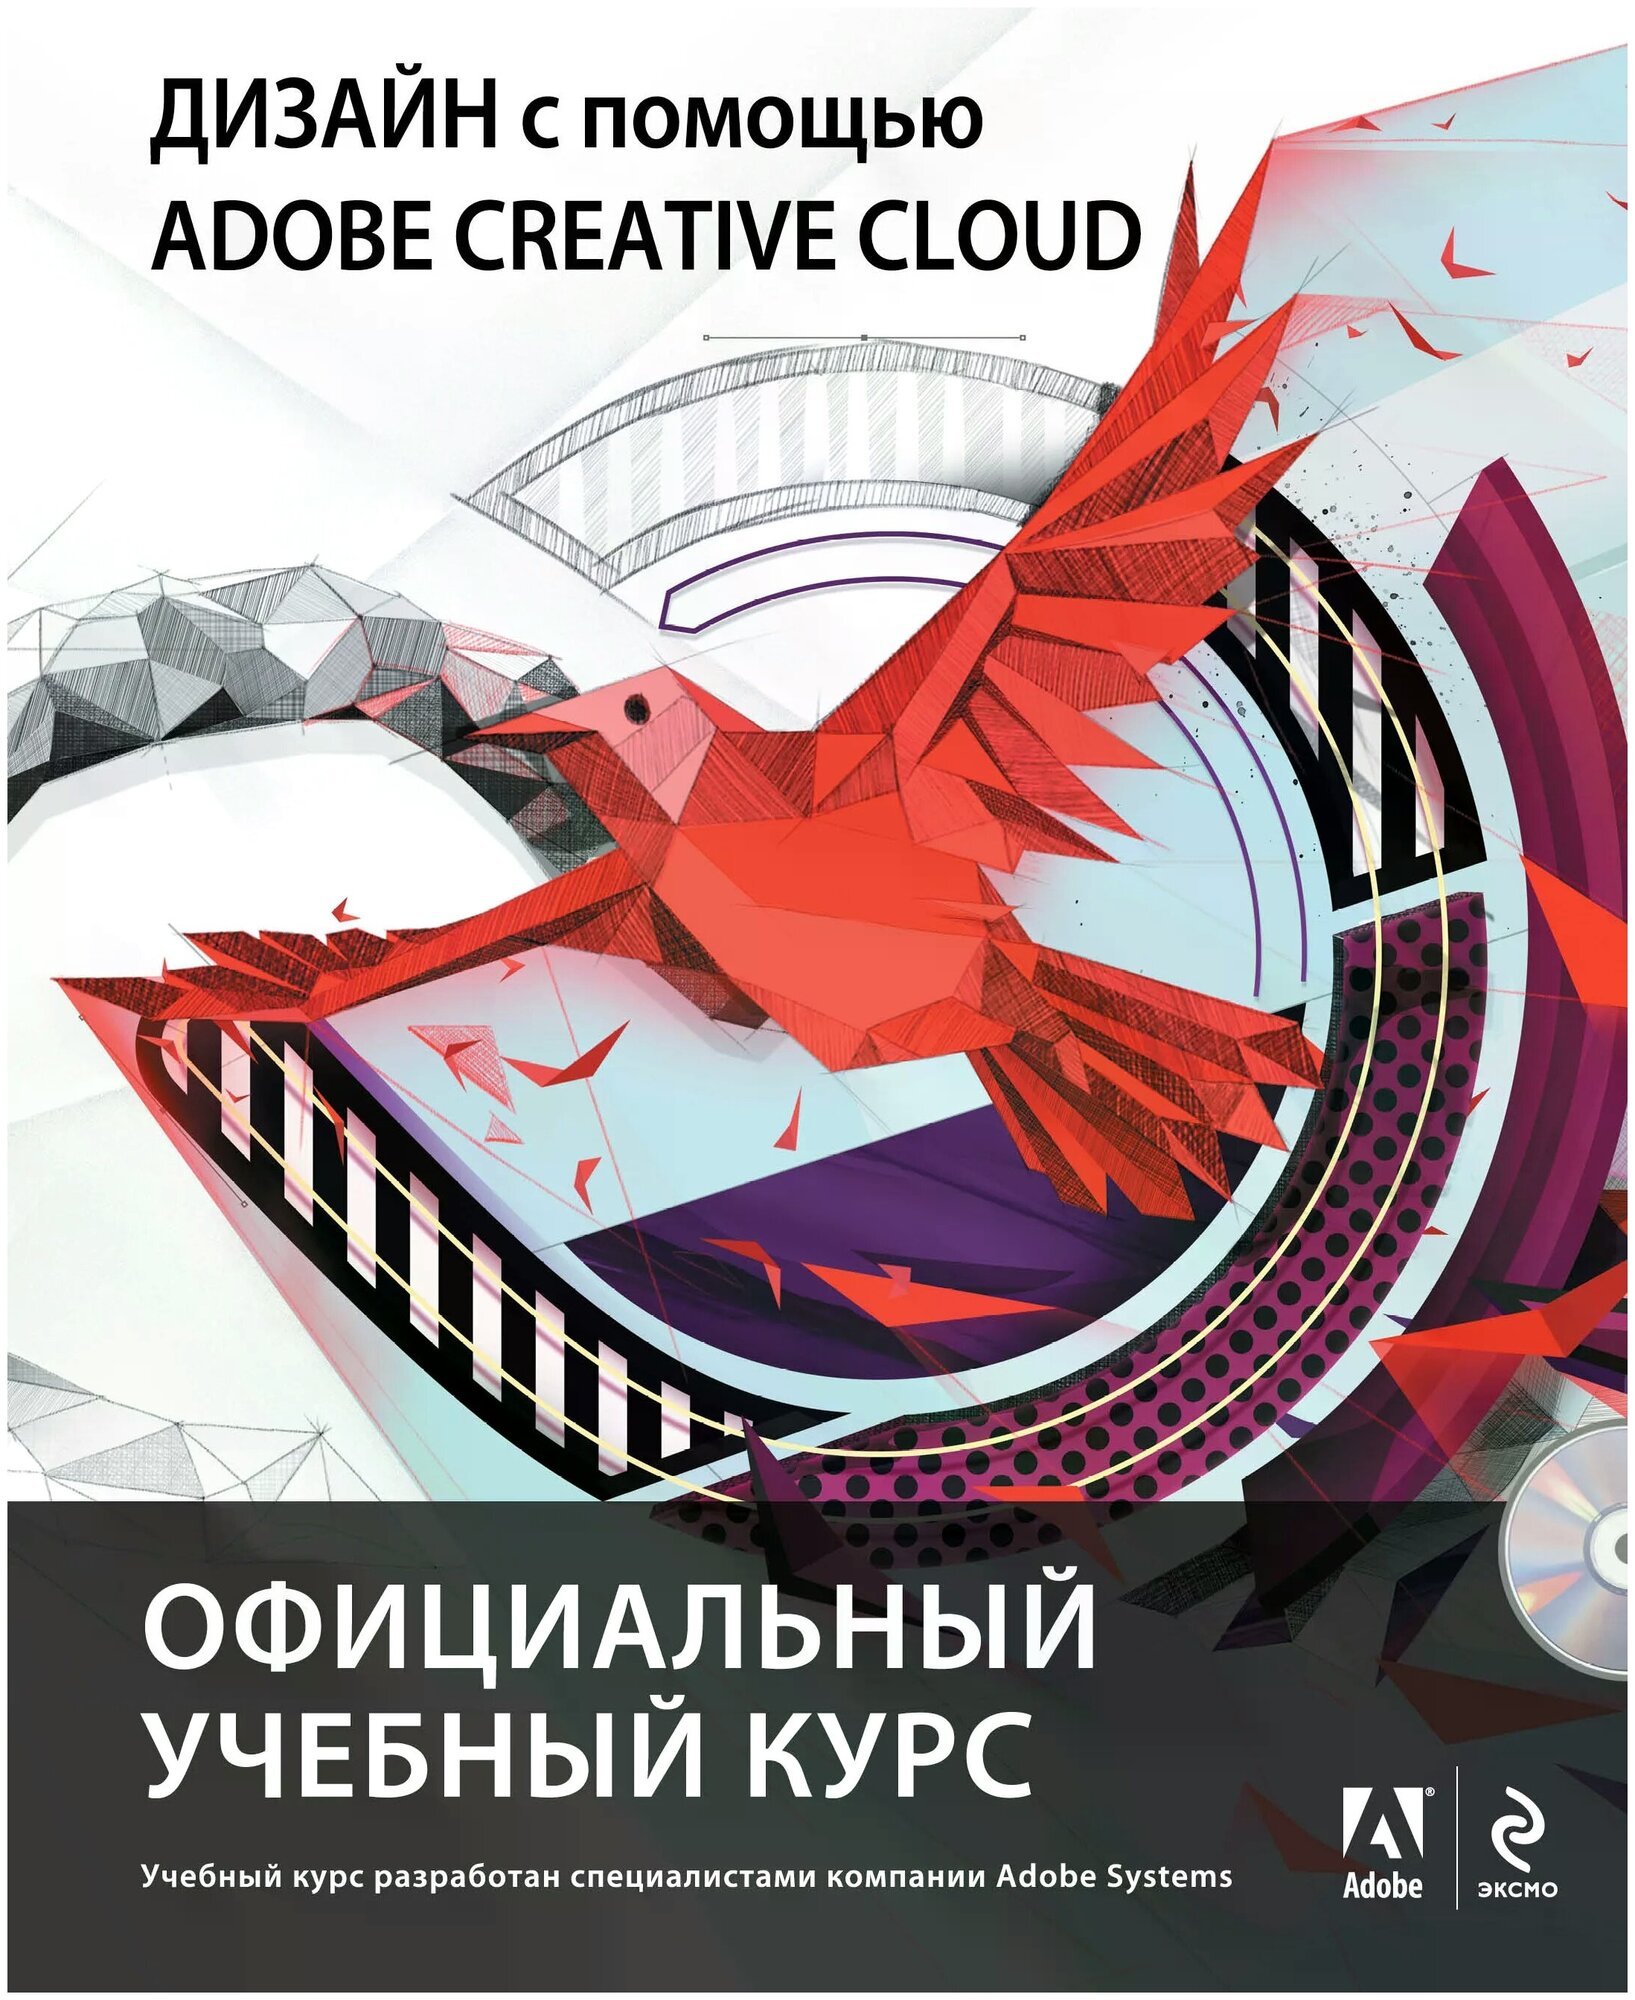 "Дизайн с помощью Adobe Creative Cloud. Официальный учебный курс (+DVD)"